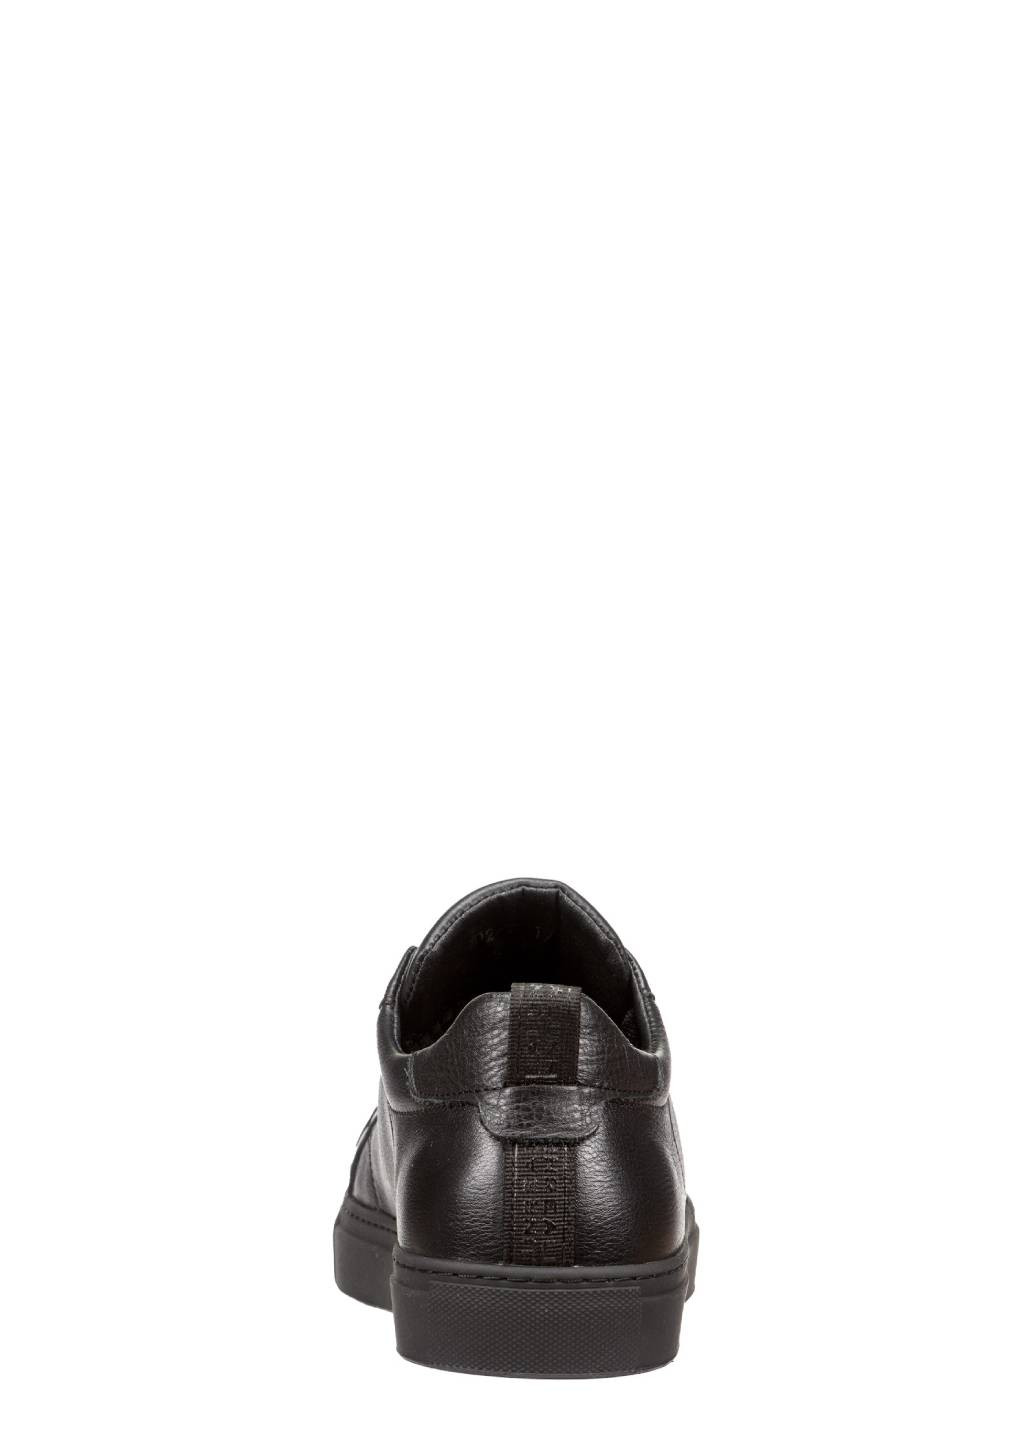 Черные кэжуал полуботинки мужские Casual на шнурках